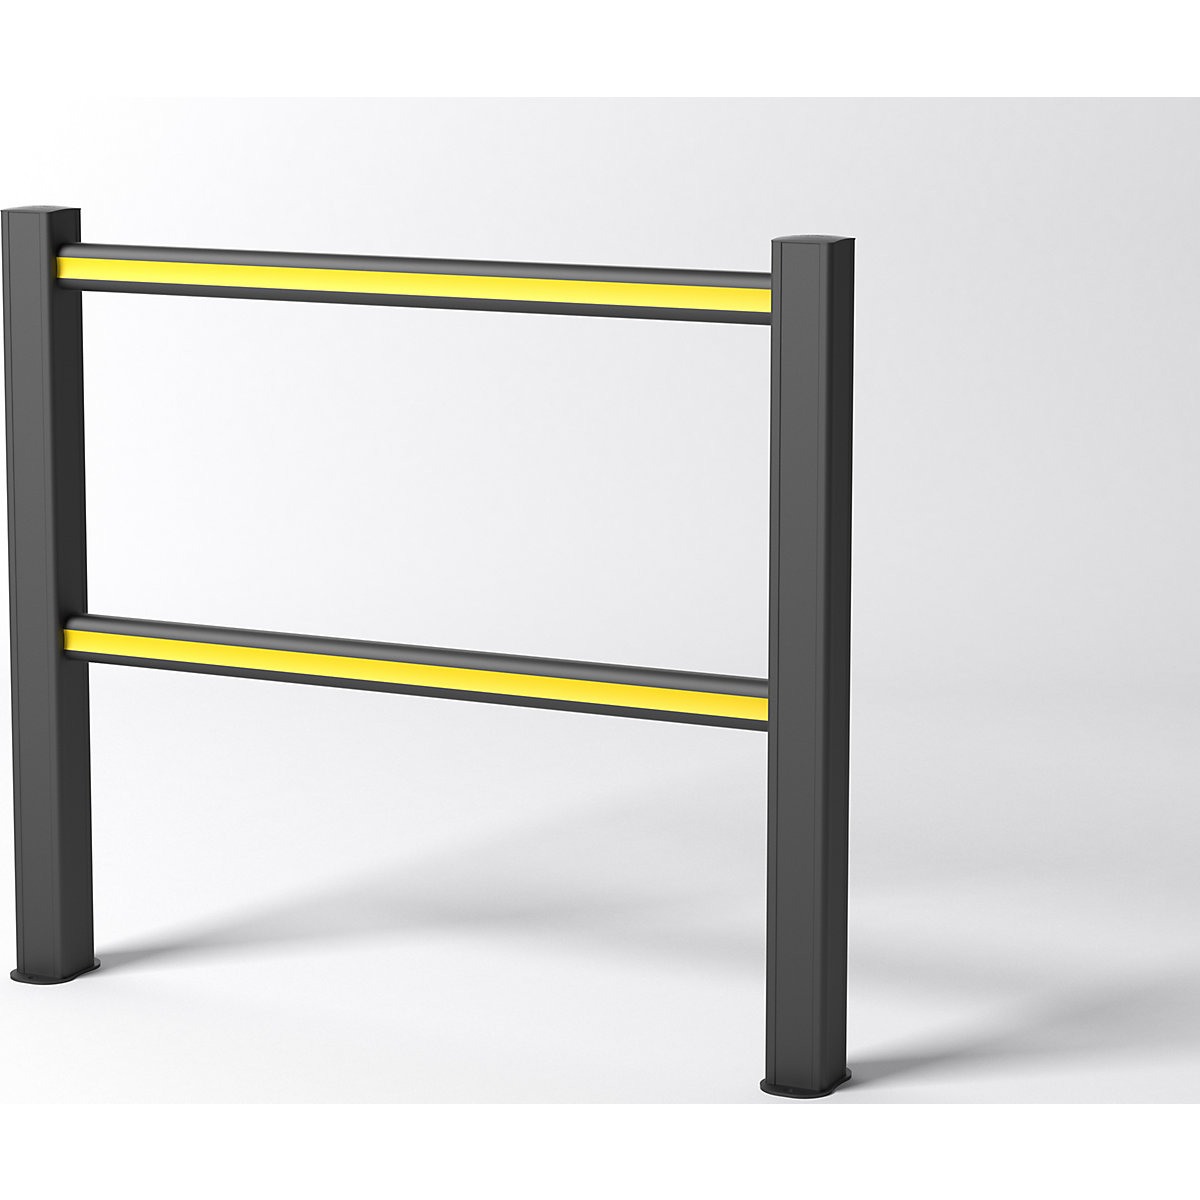 FLEX IMPACT Korlátrendszer, fekete oszlop – fekete/sárga merevítővel, szélesség 1250 mm